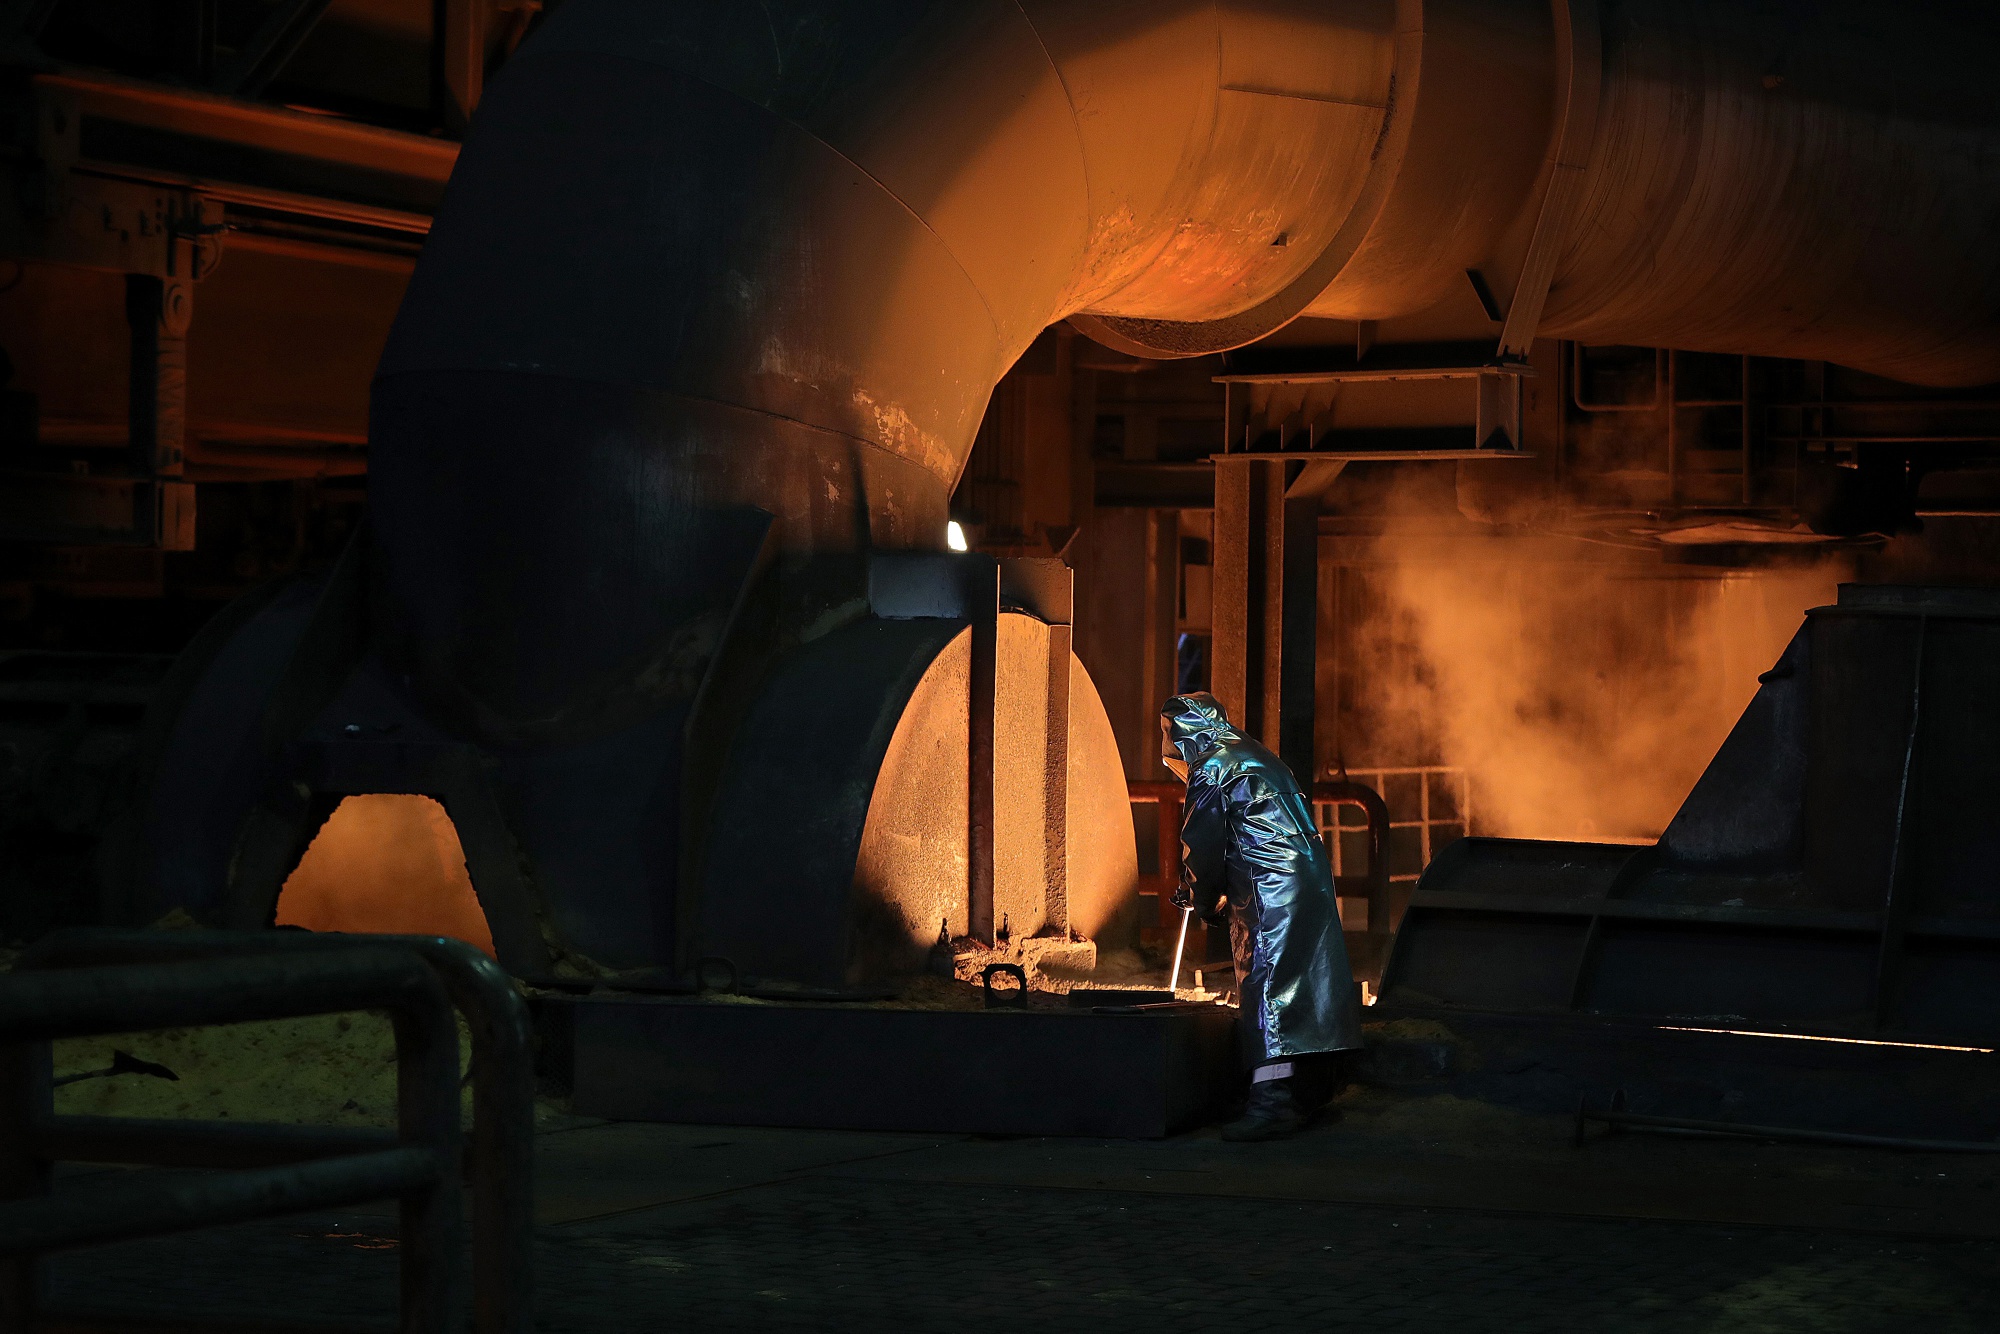 European Steel Industry Sounds Alarm Over Economic Outlook - Bloomberg